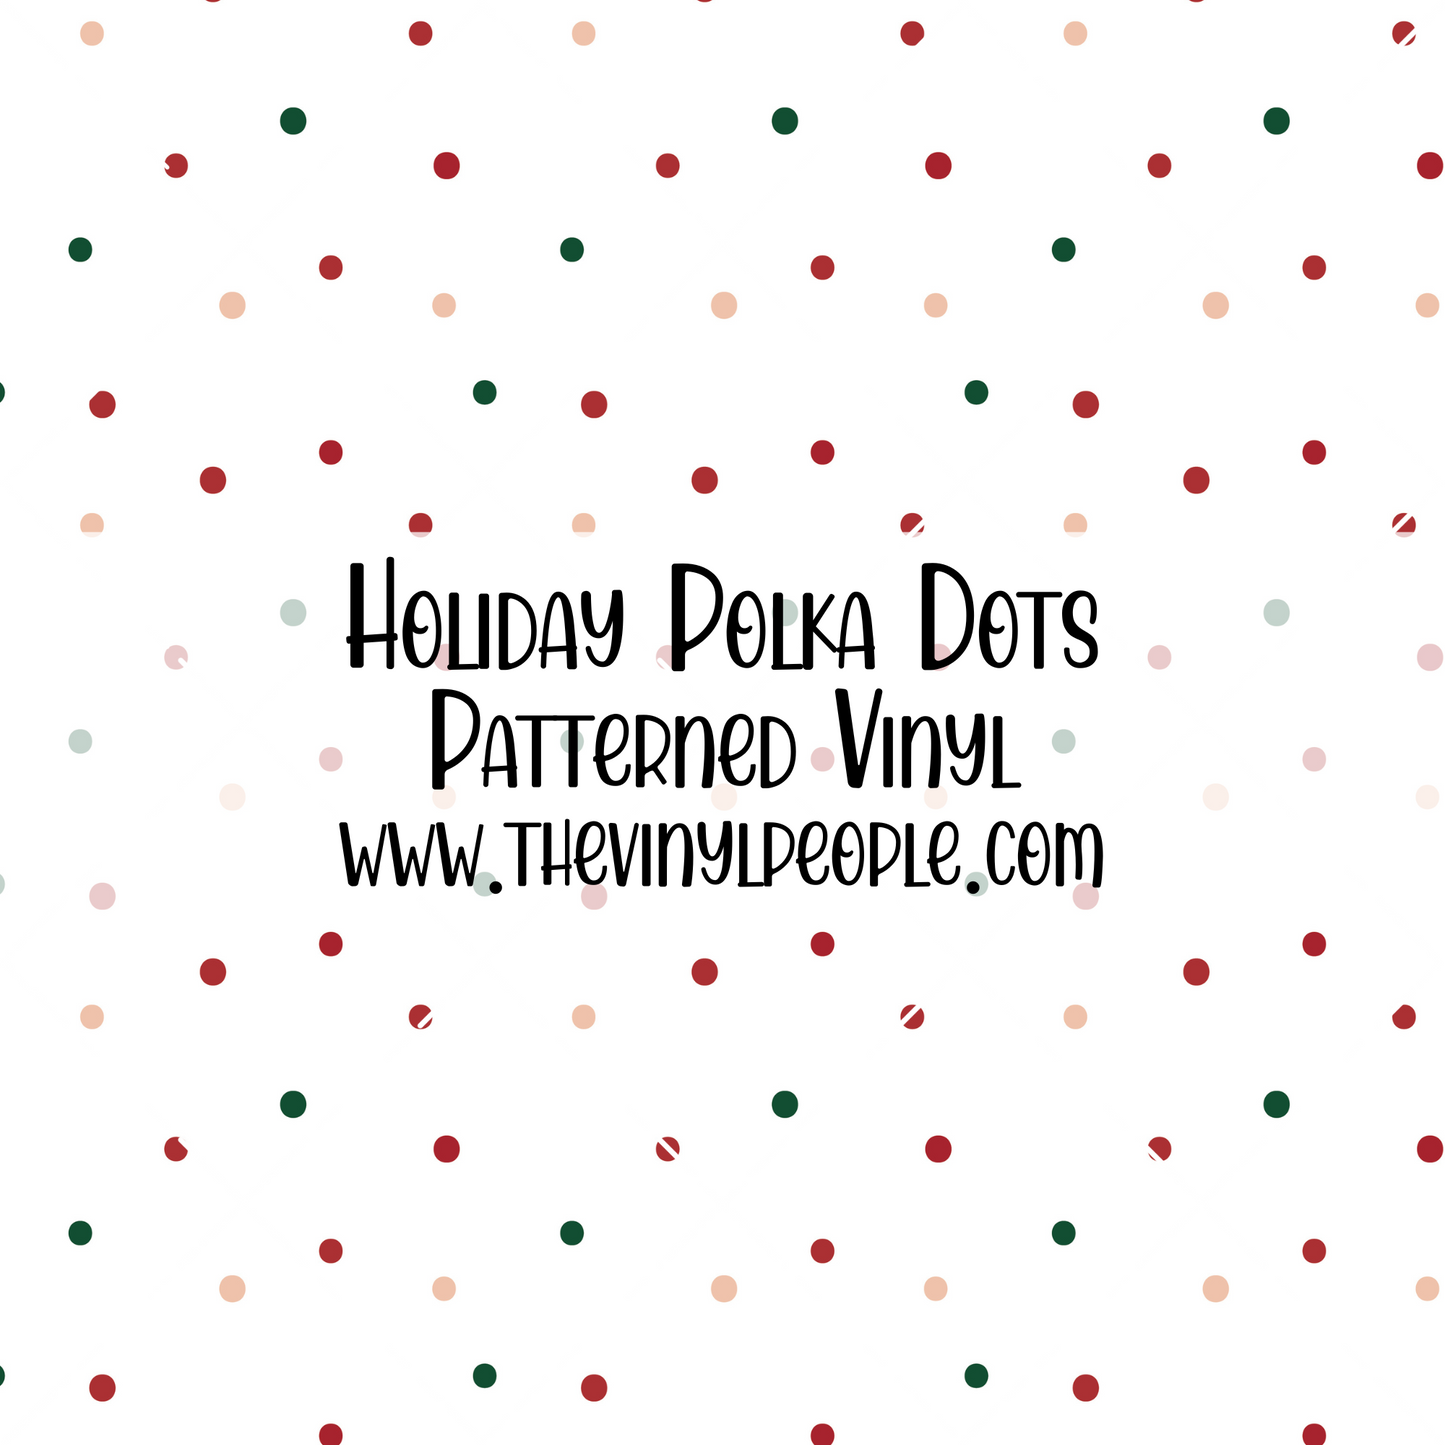 Holiday Polka Dots Patterned Vinyl